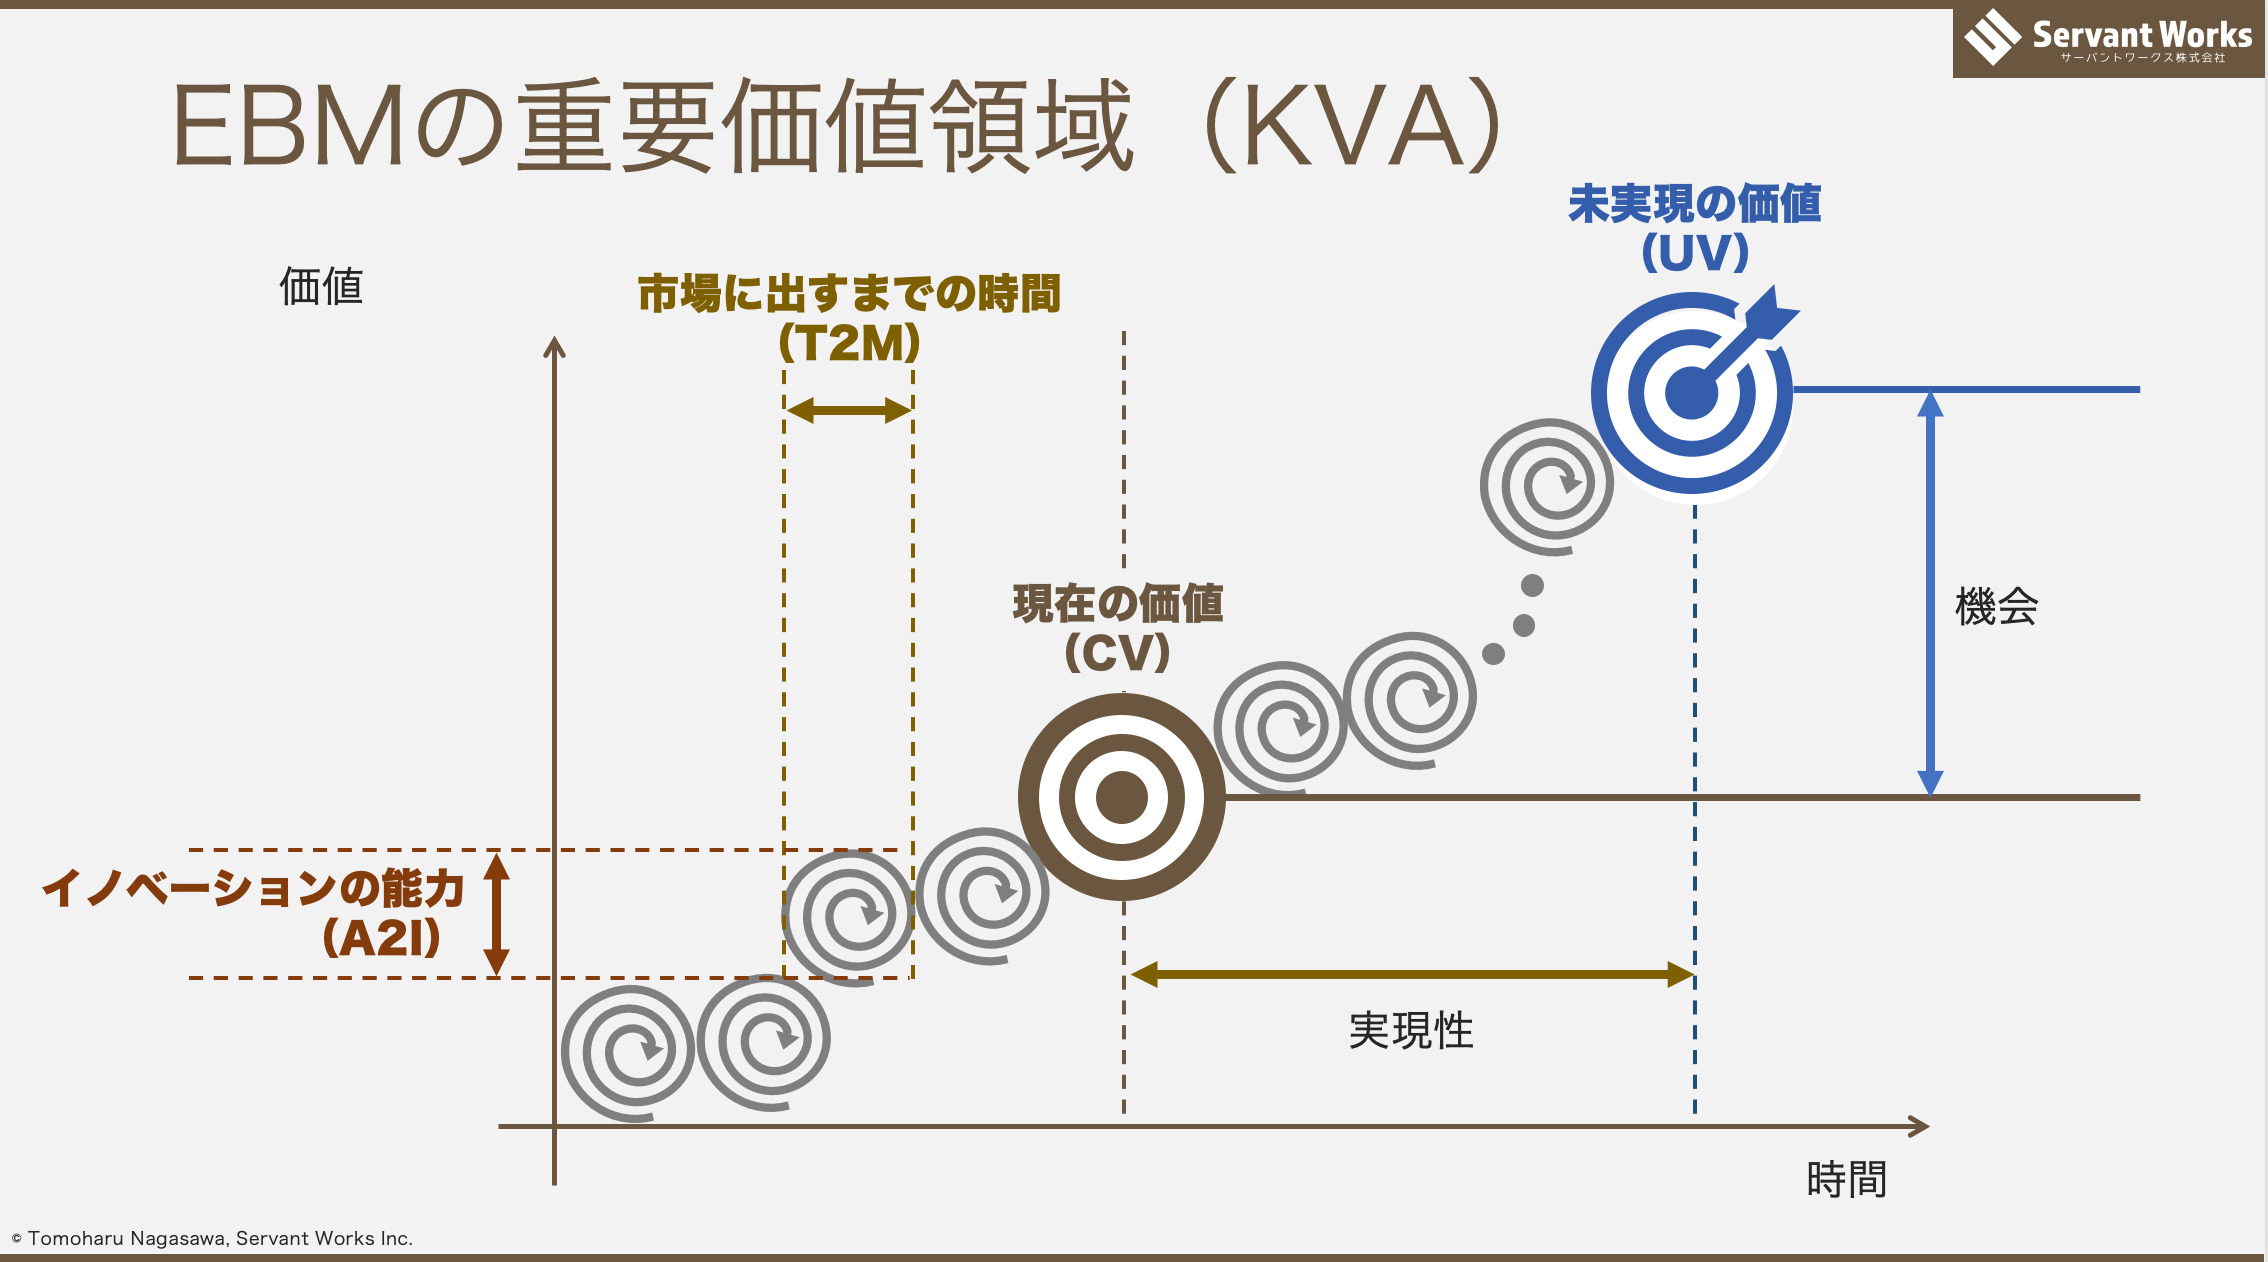 エビデンスベースドマネジメントのKVAの図解